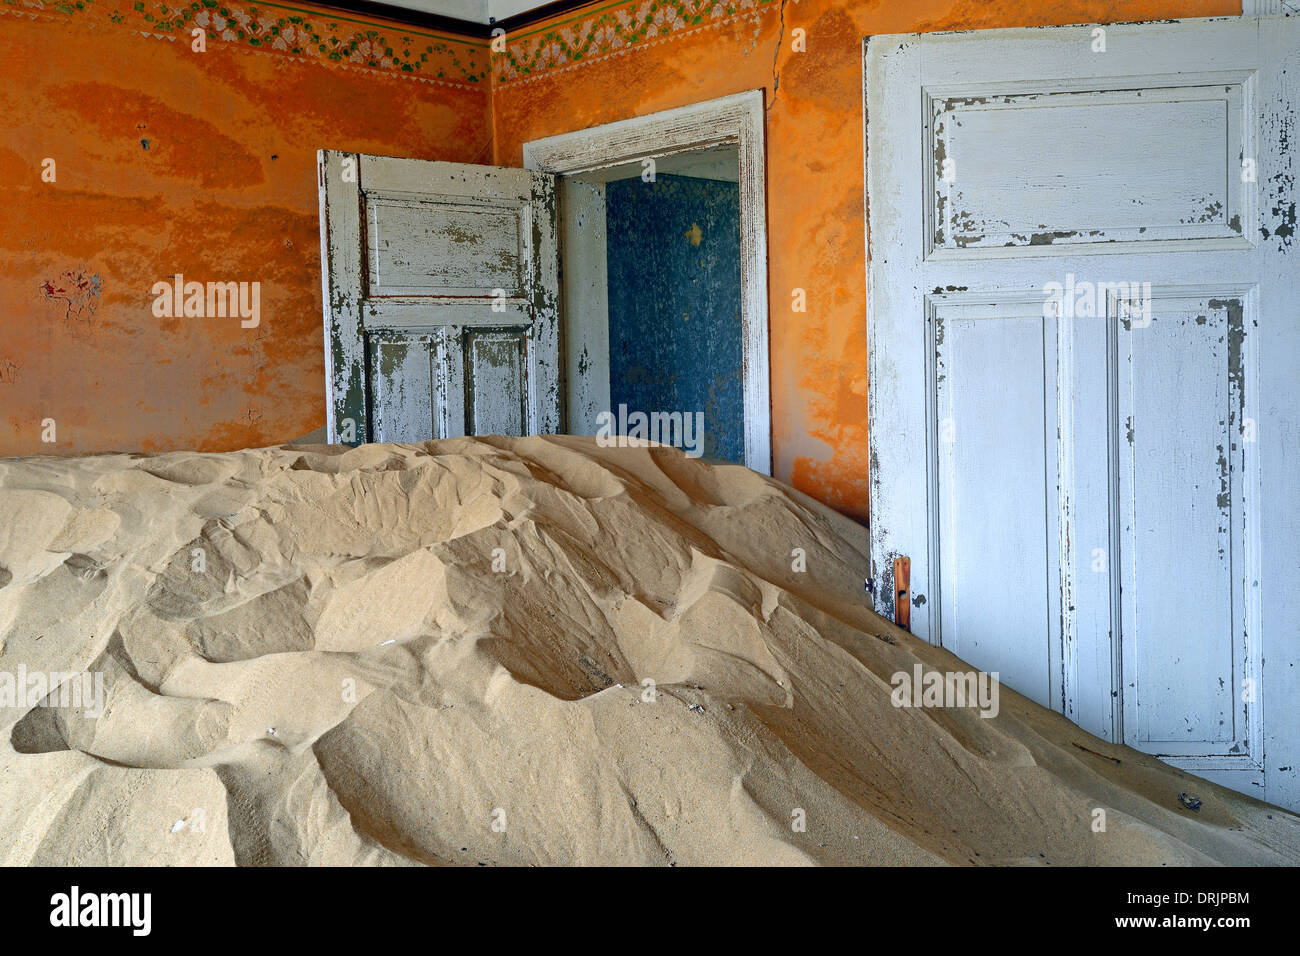 Les dunes de sables du désert et pris des bâtiments résidentiels, les bâtiments de travail dans l'ancienne ville de diamants de Kolmanskuppe, Kolmansko Banque D'Images